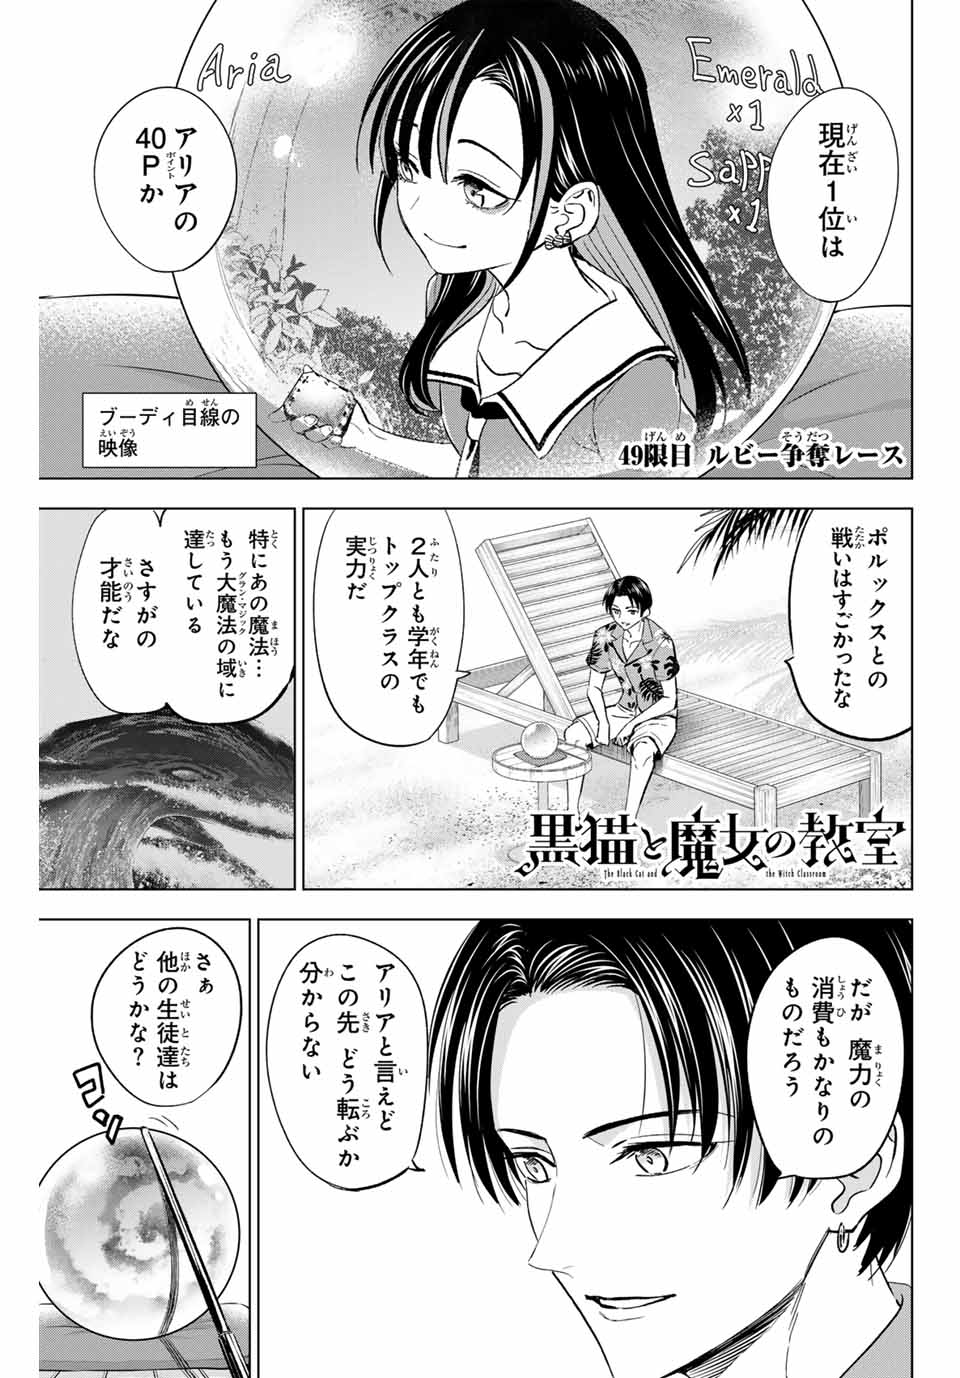 Kuroneko to Majo no Kyoushitsu - Chapter 49 - Page 1